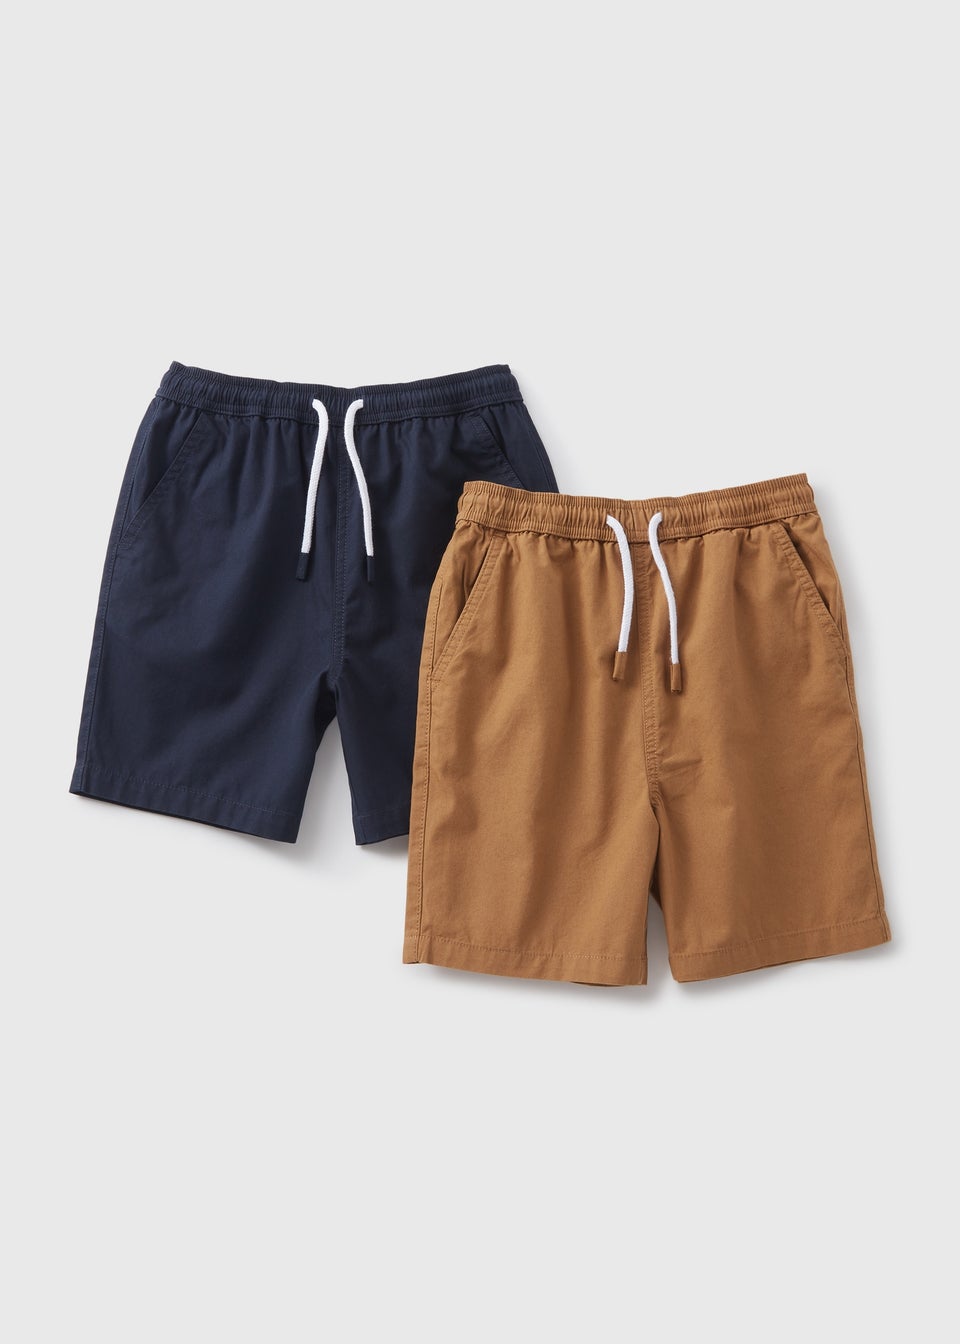 Boys 2 Pack Navy & Tan Woven Shorts (7-13yrs)